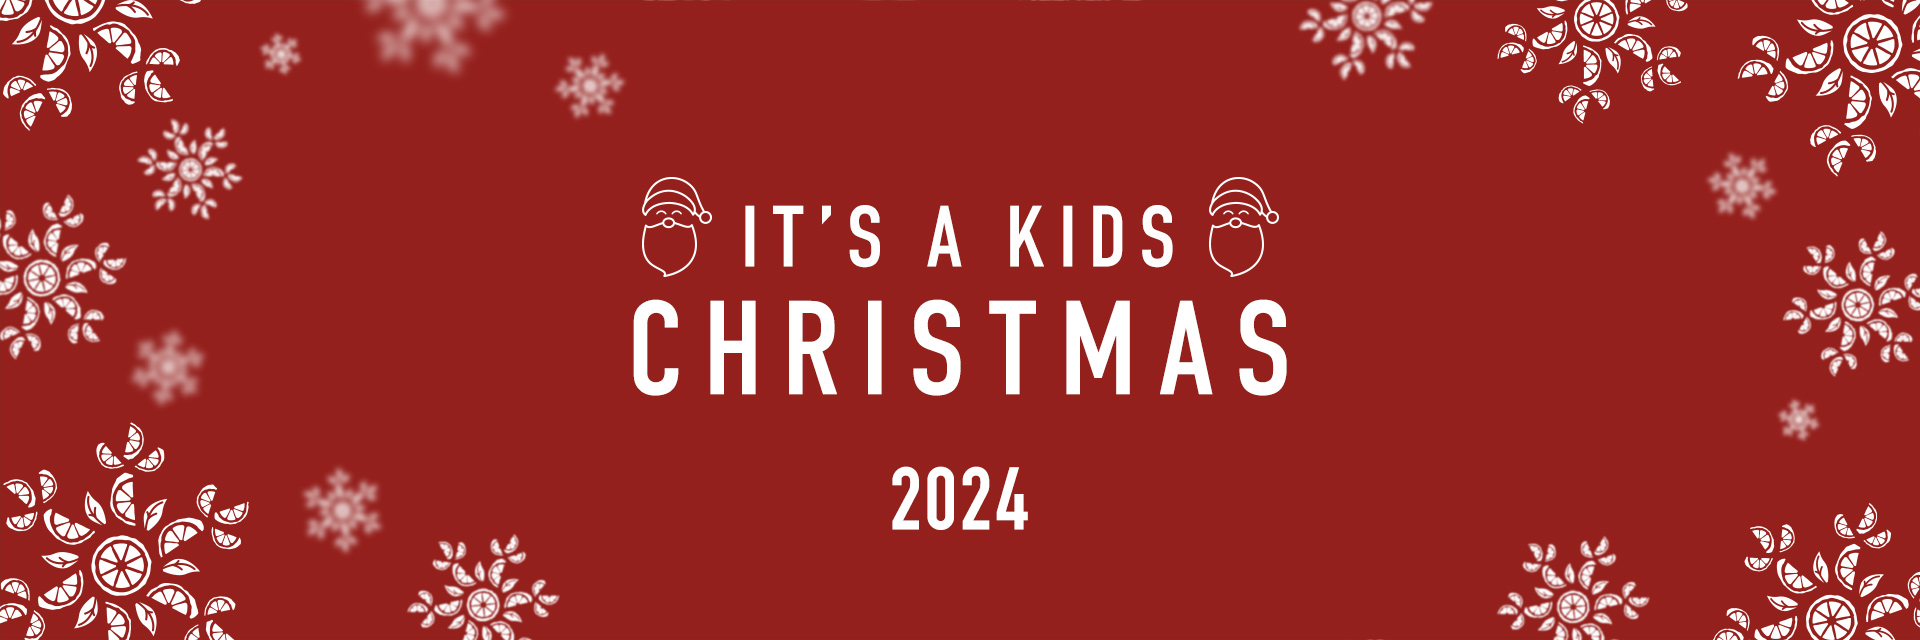 Kids Christmas Menu 2024 at The Orchard